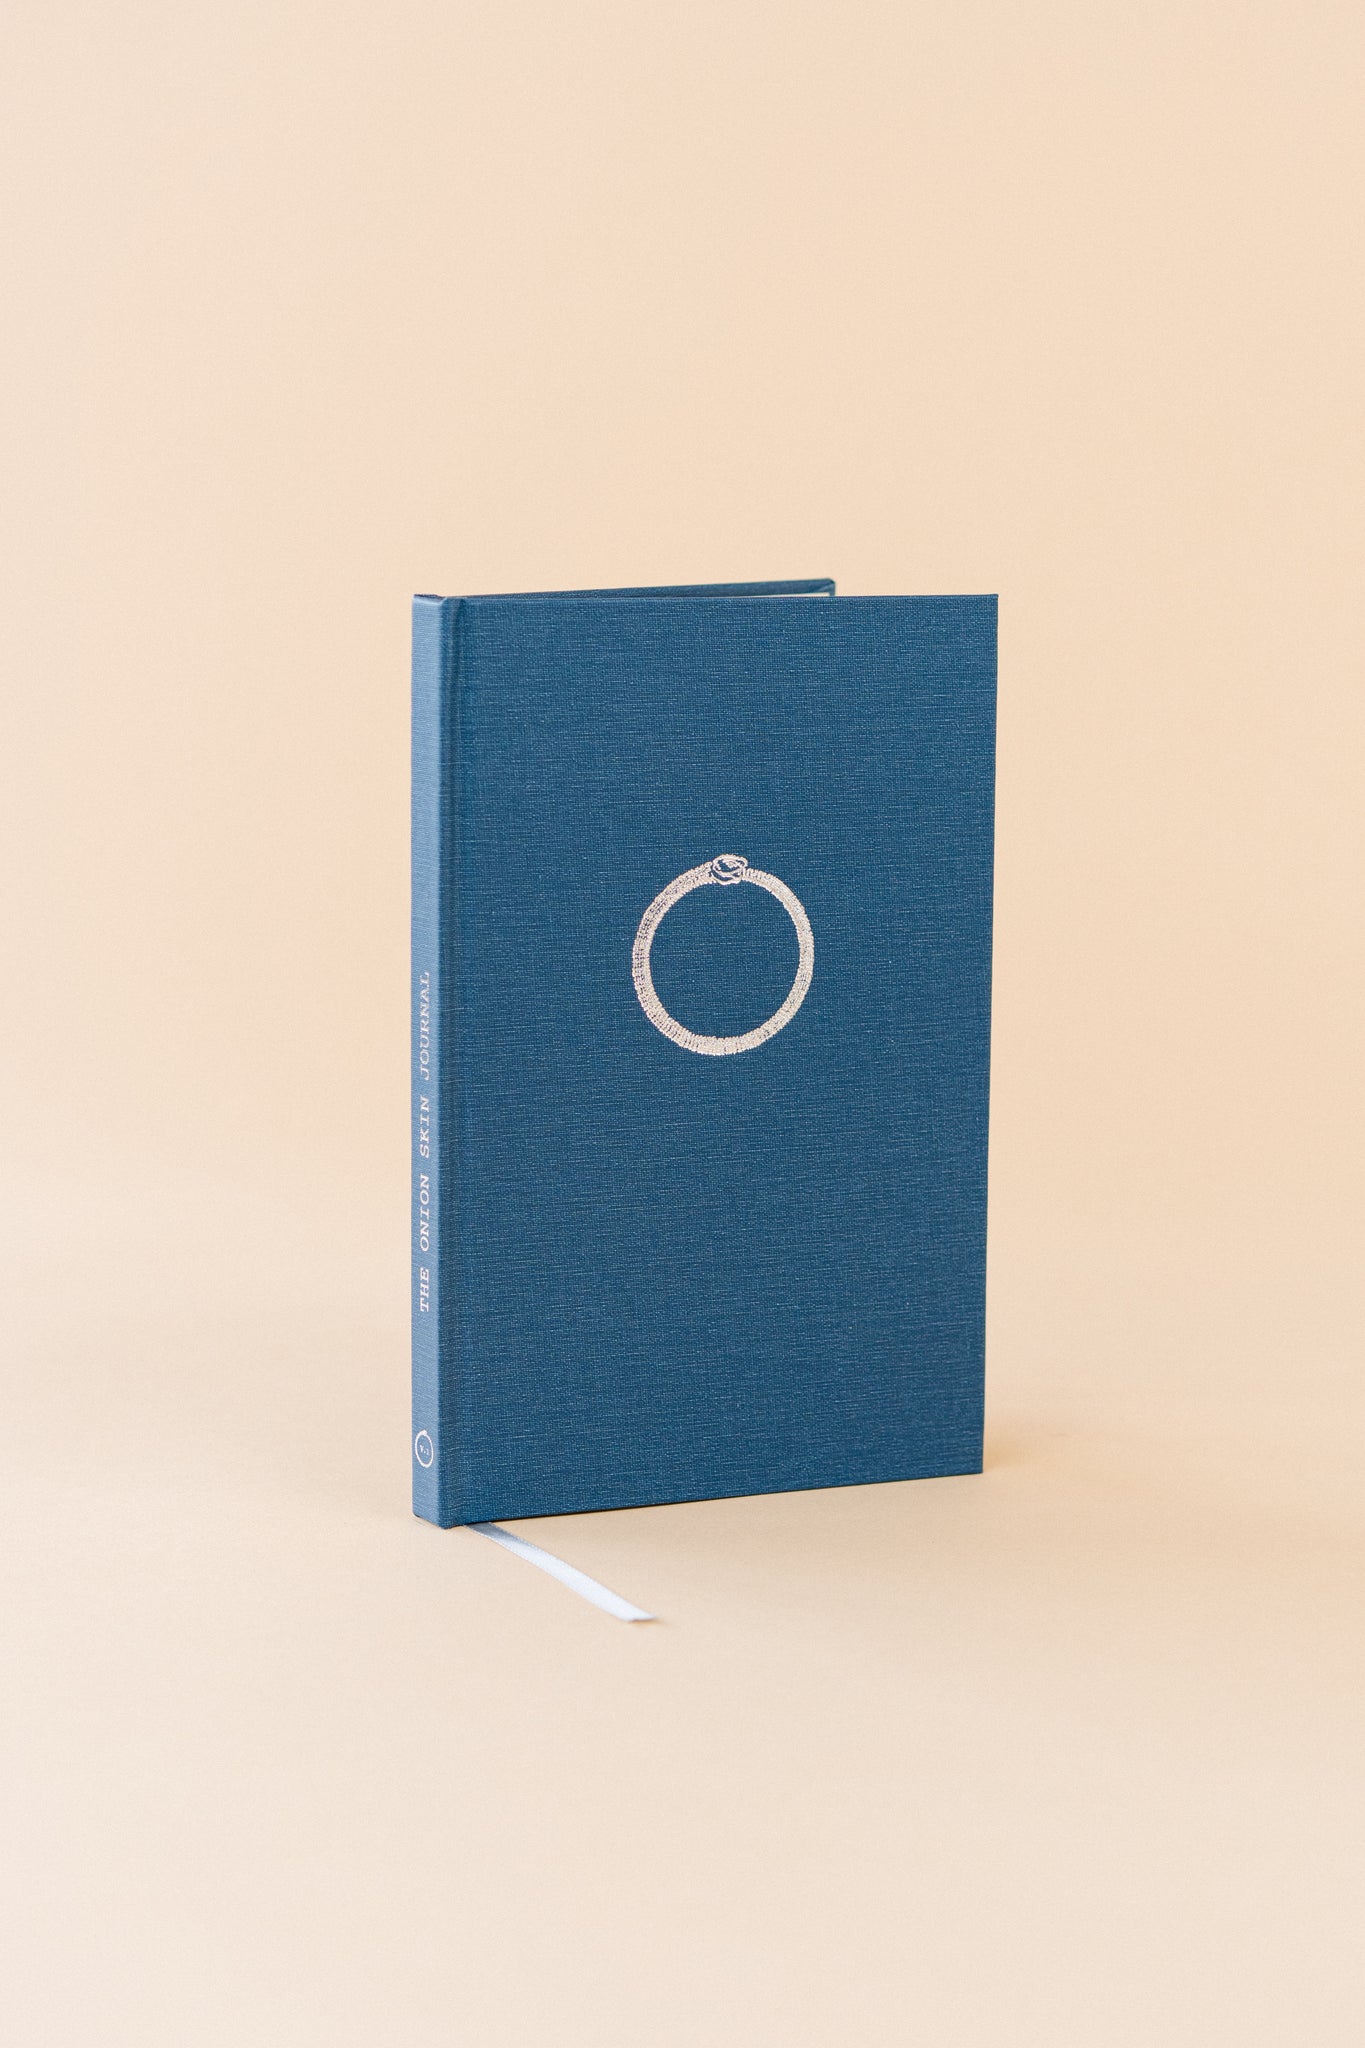 Onionskin Notebook – 26 Market